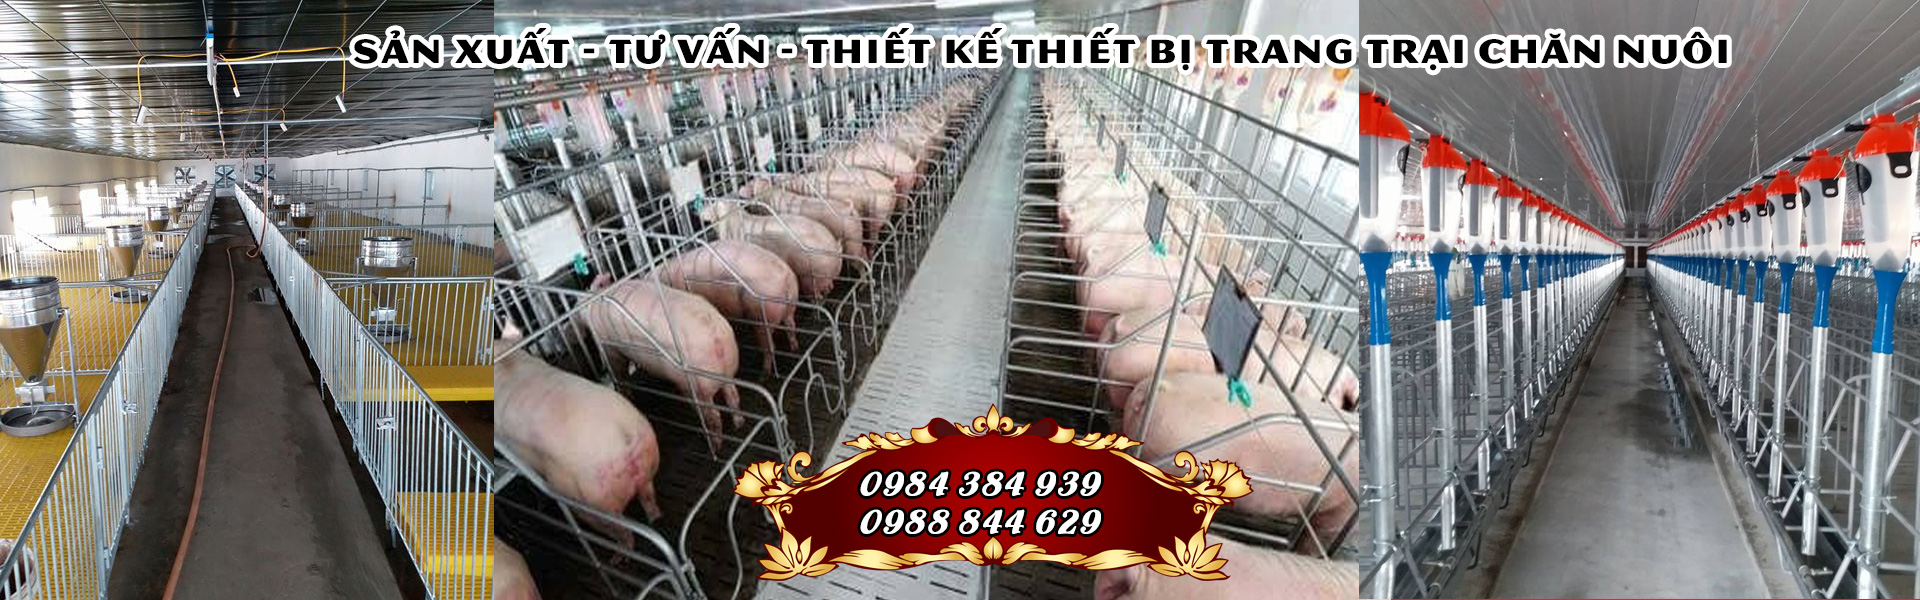 Thiết bị chăn nuôi heo tại Nghệ An